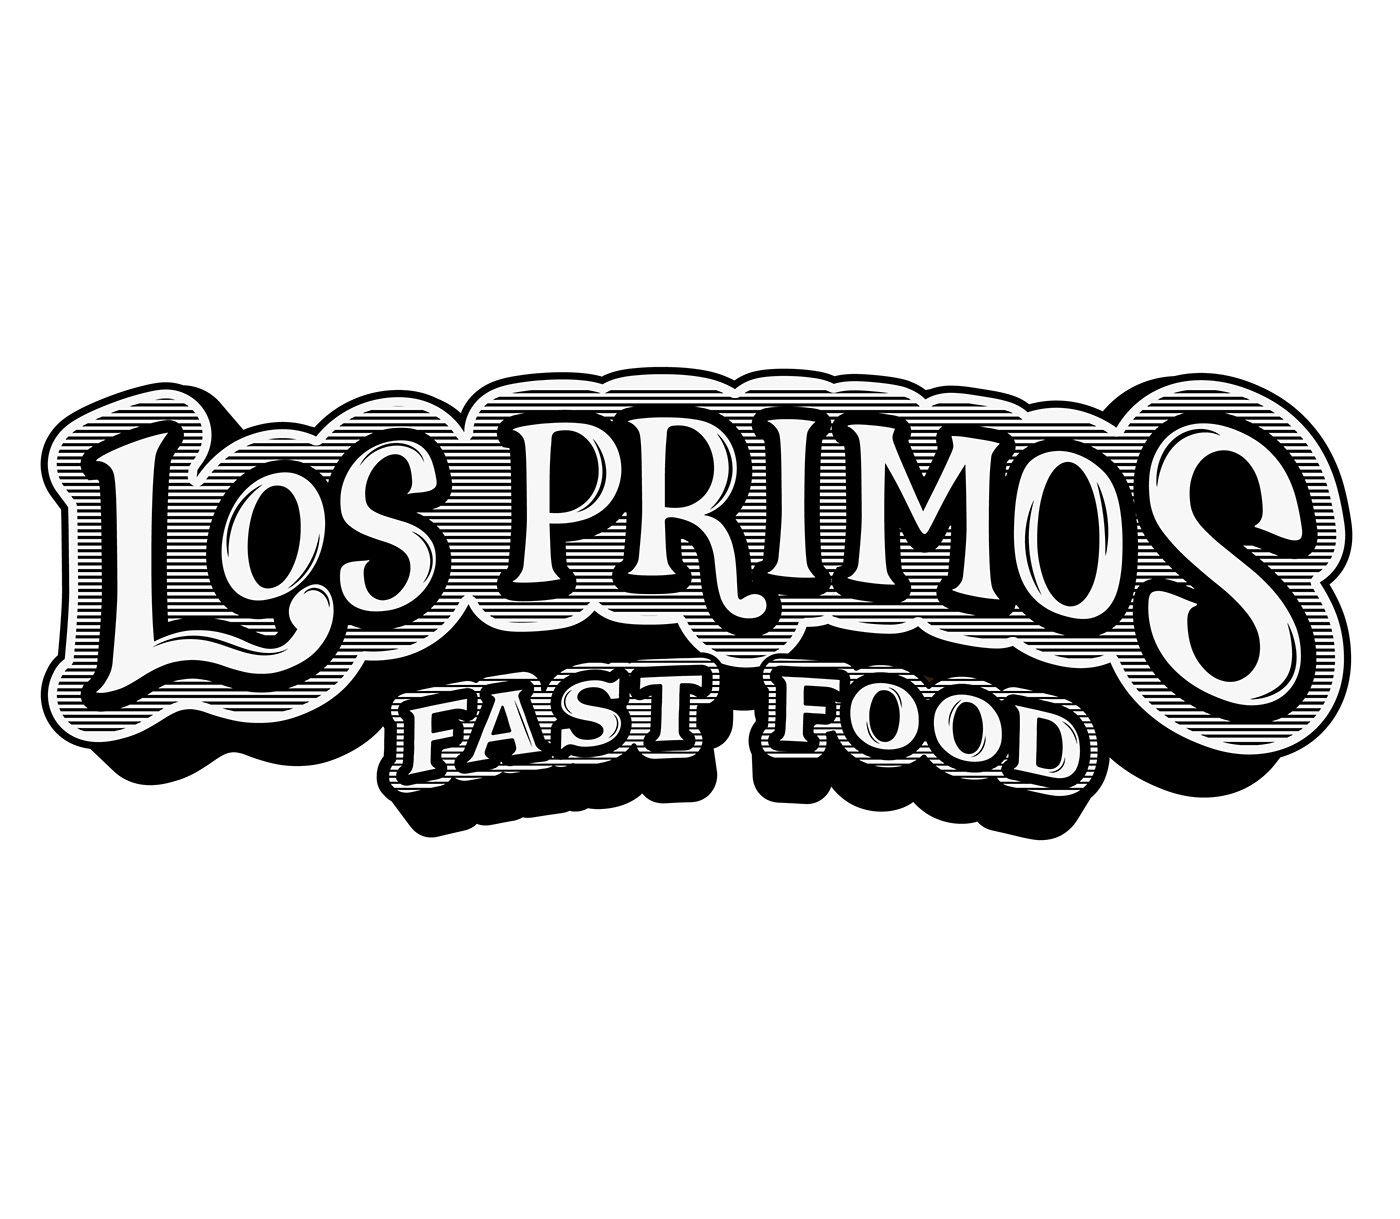 Primos Logo - Fast Food Los Primos